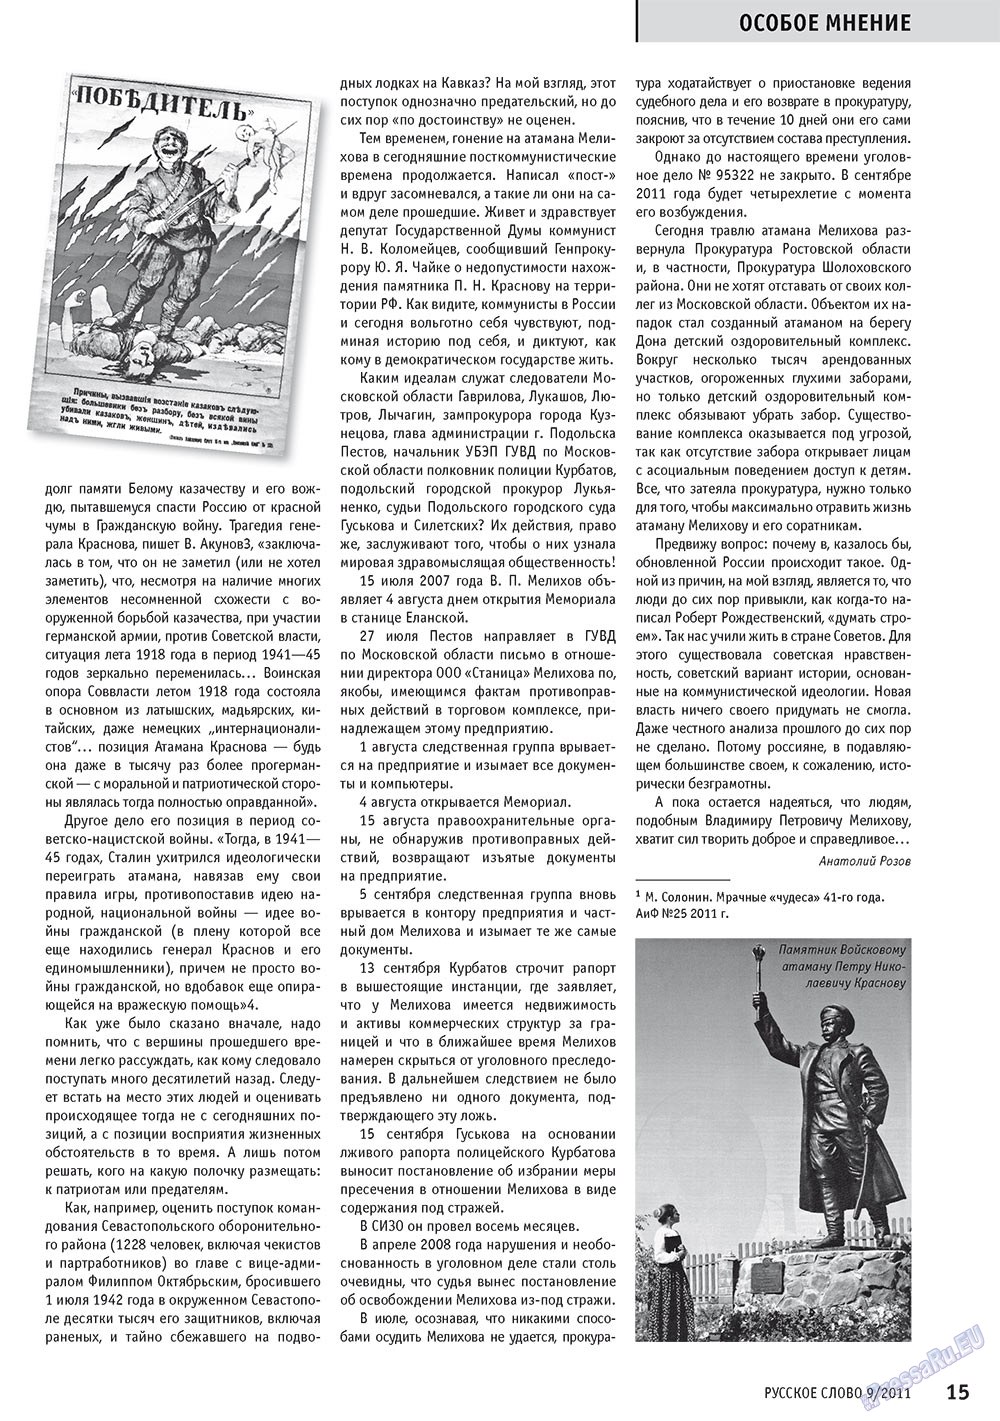 Русское слово, журнал. 2011 №9 стр.17